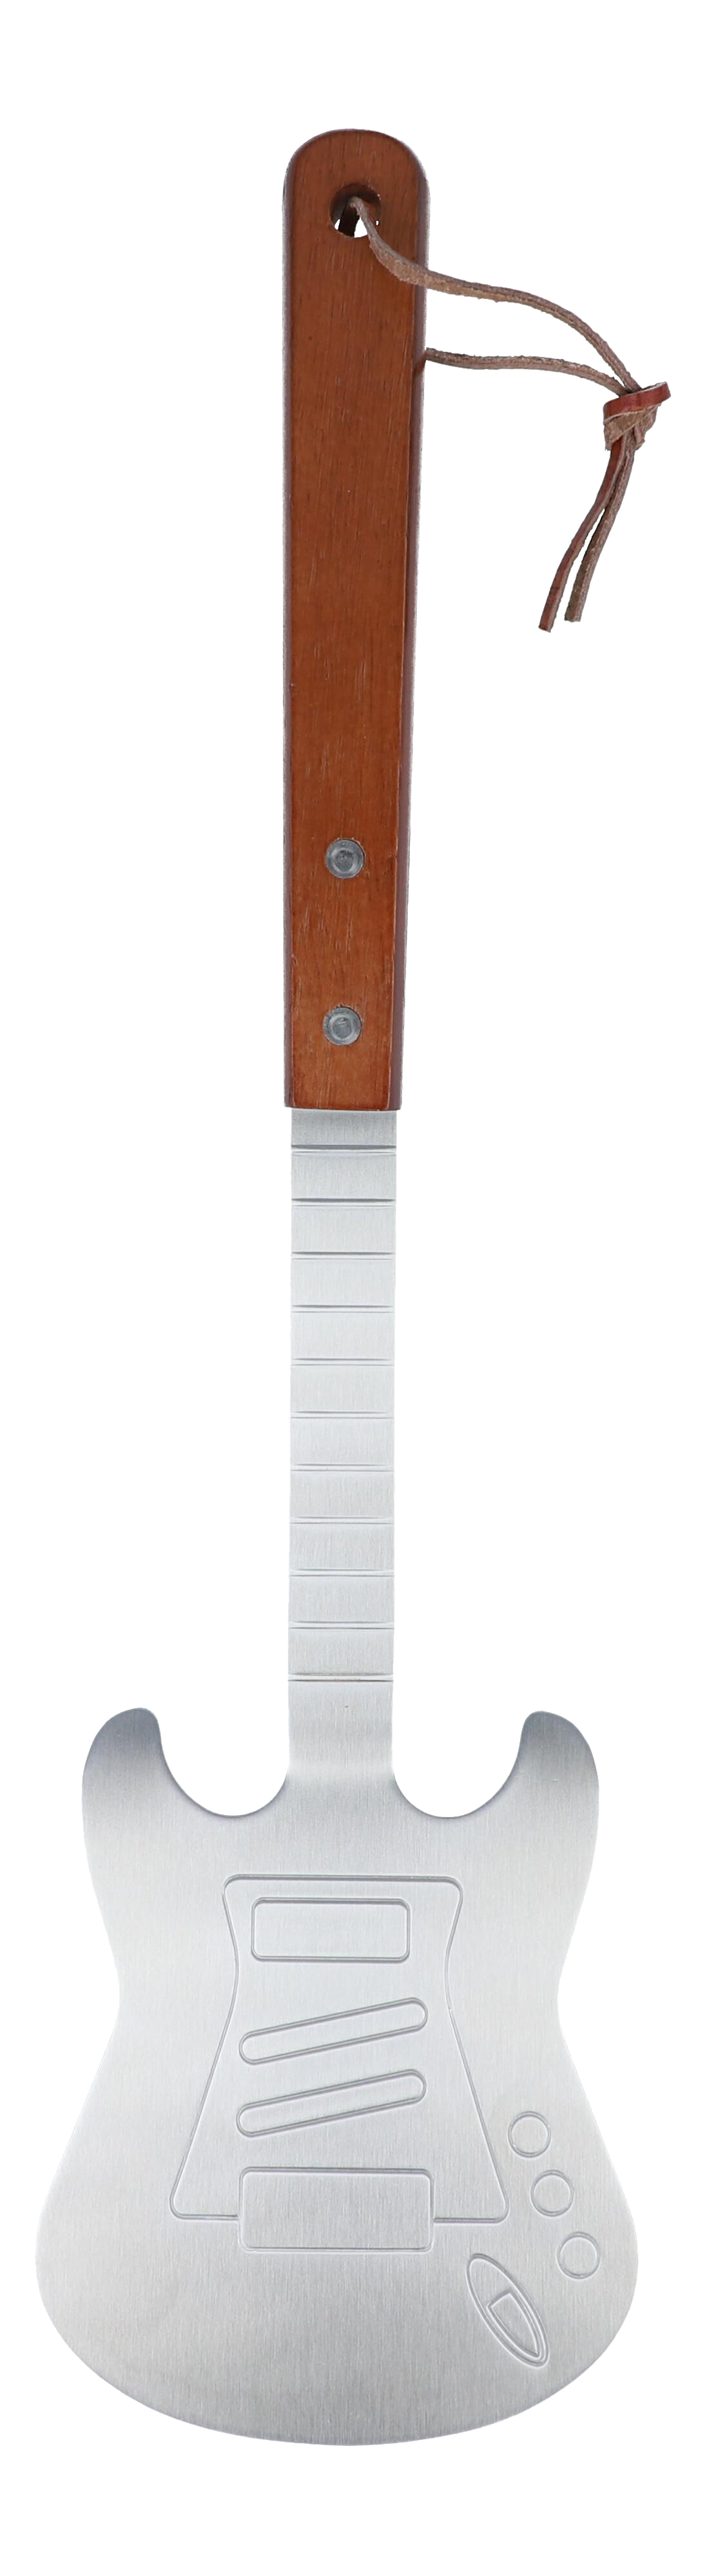 BBQ E-Gitarren-Grillwender mit Holzgriff